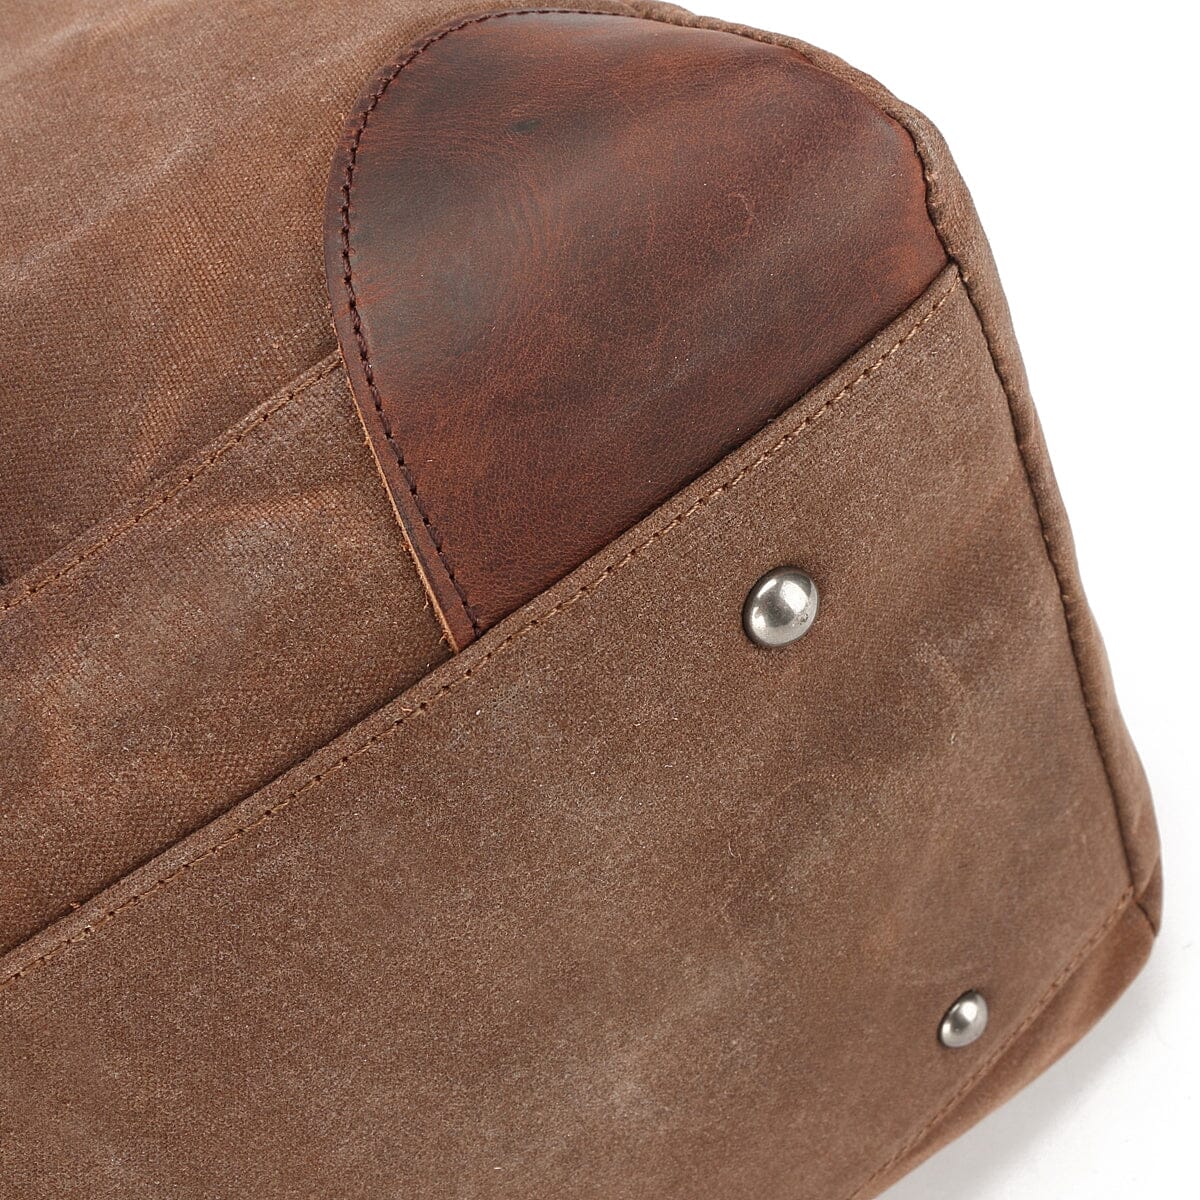 bordure en cuir et rivet de protection fond du sac